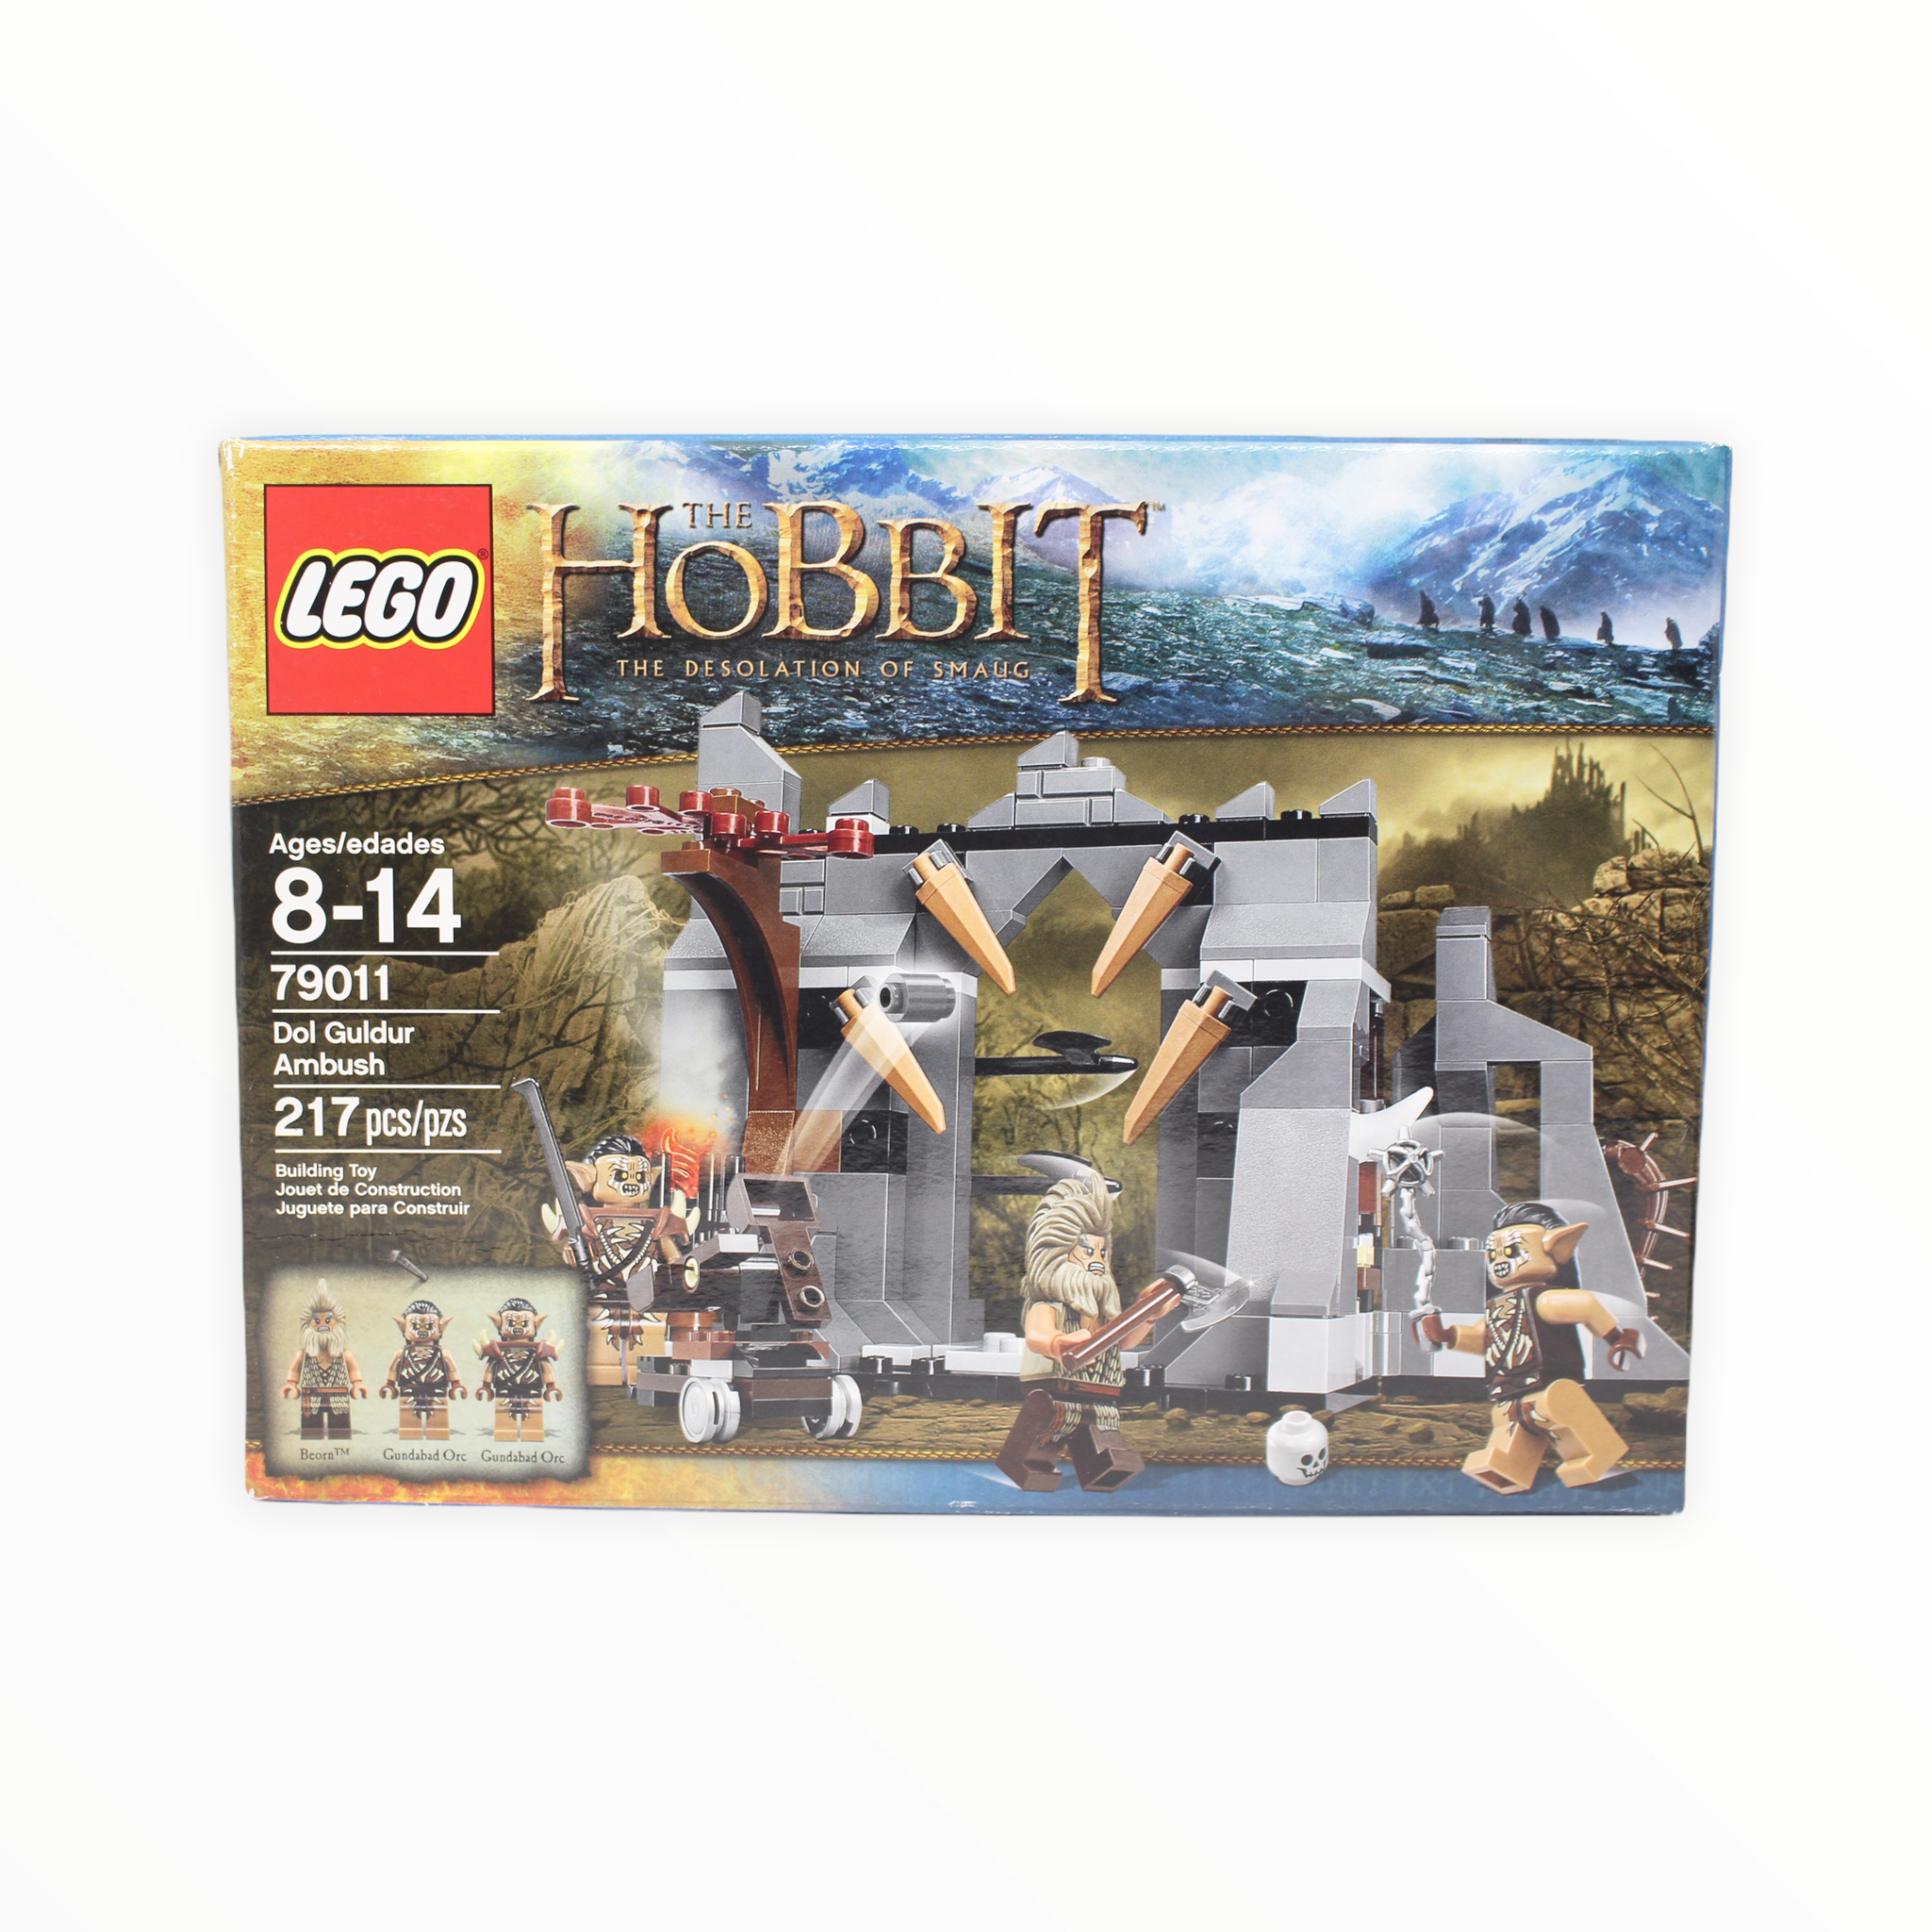 Retired Set 79011 The Hobbit Dol Guldur Ambush